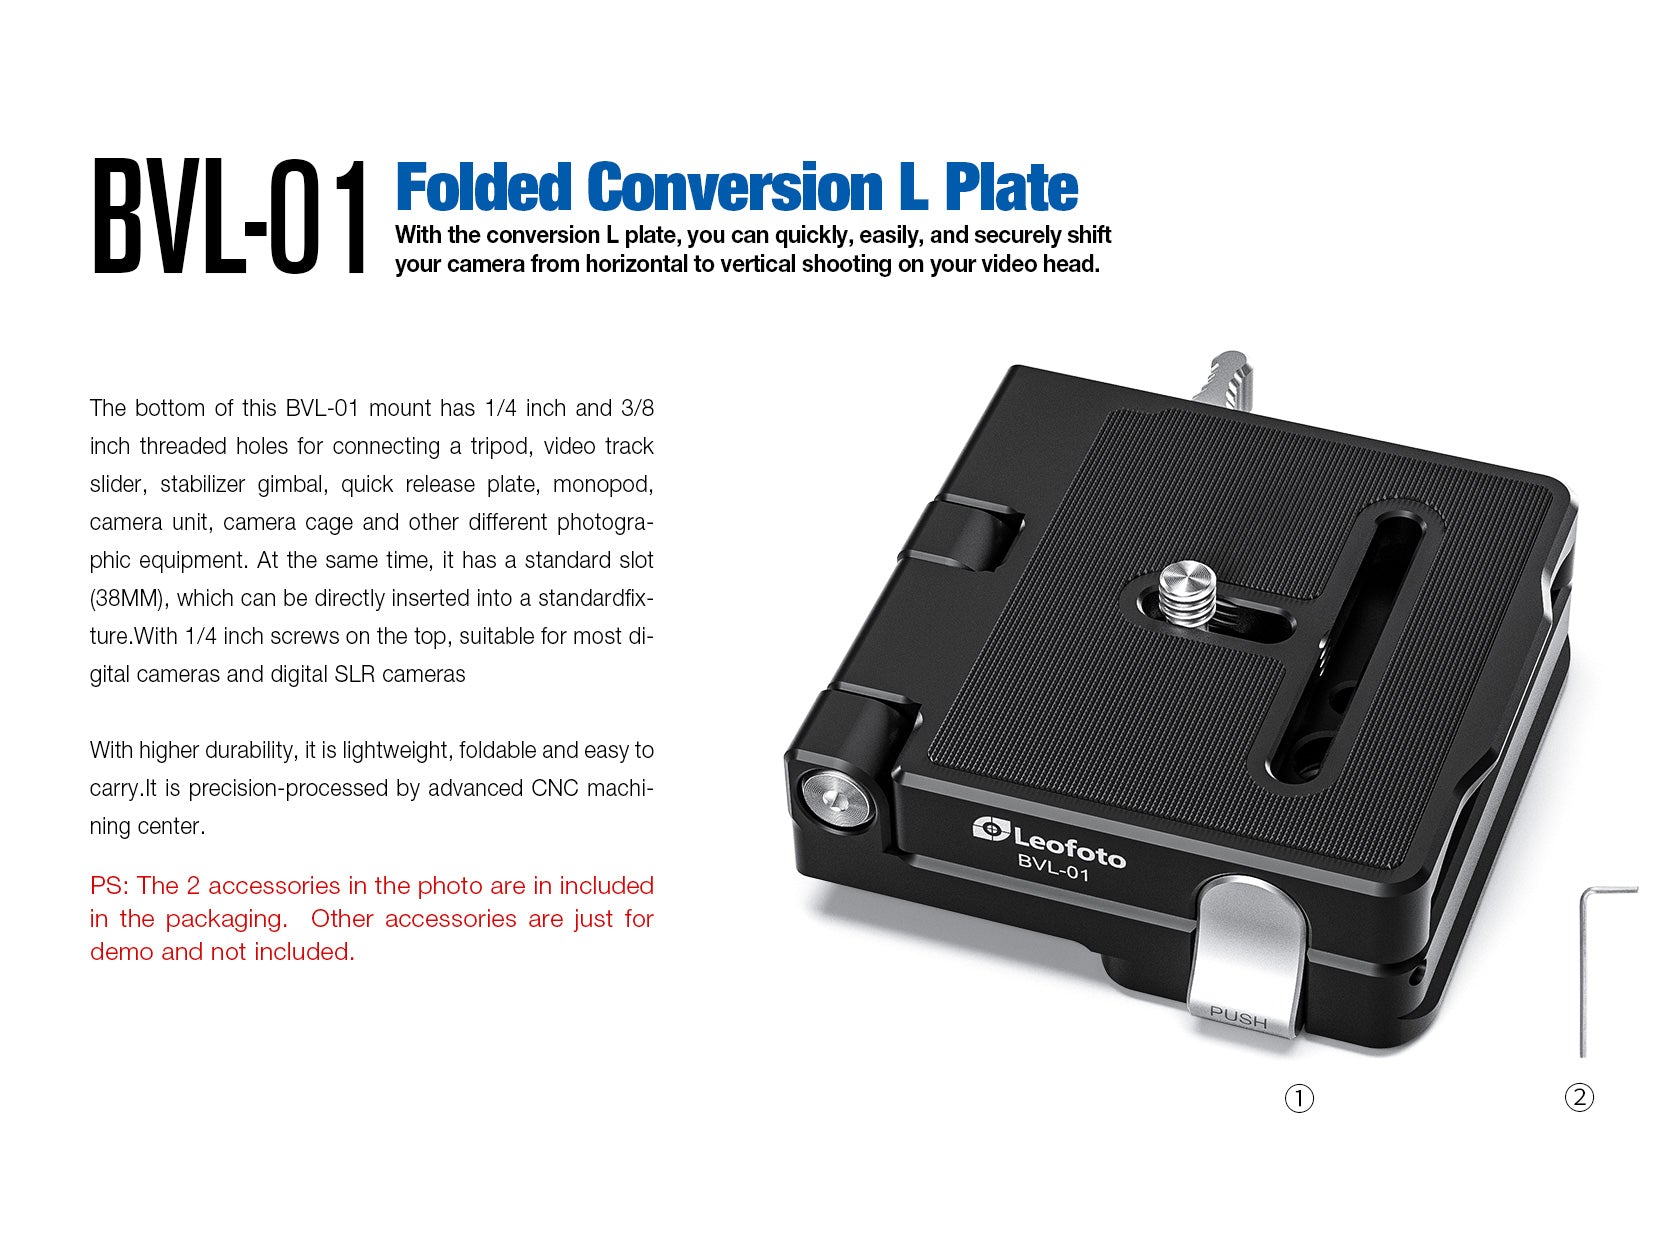 Leofoto BVL-01 Foldable Conversion L Plate